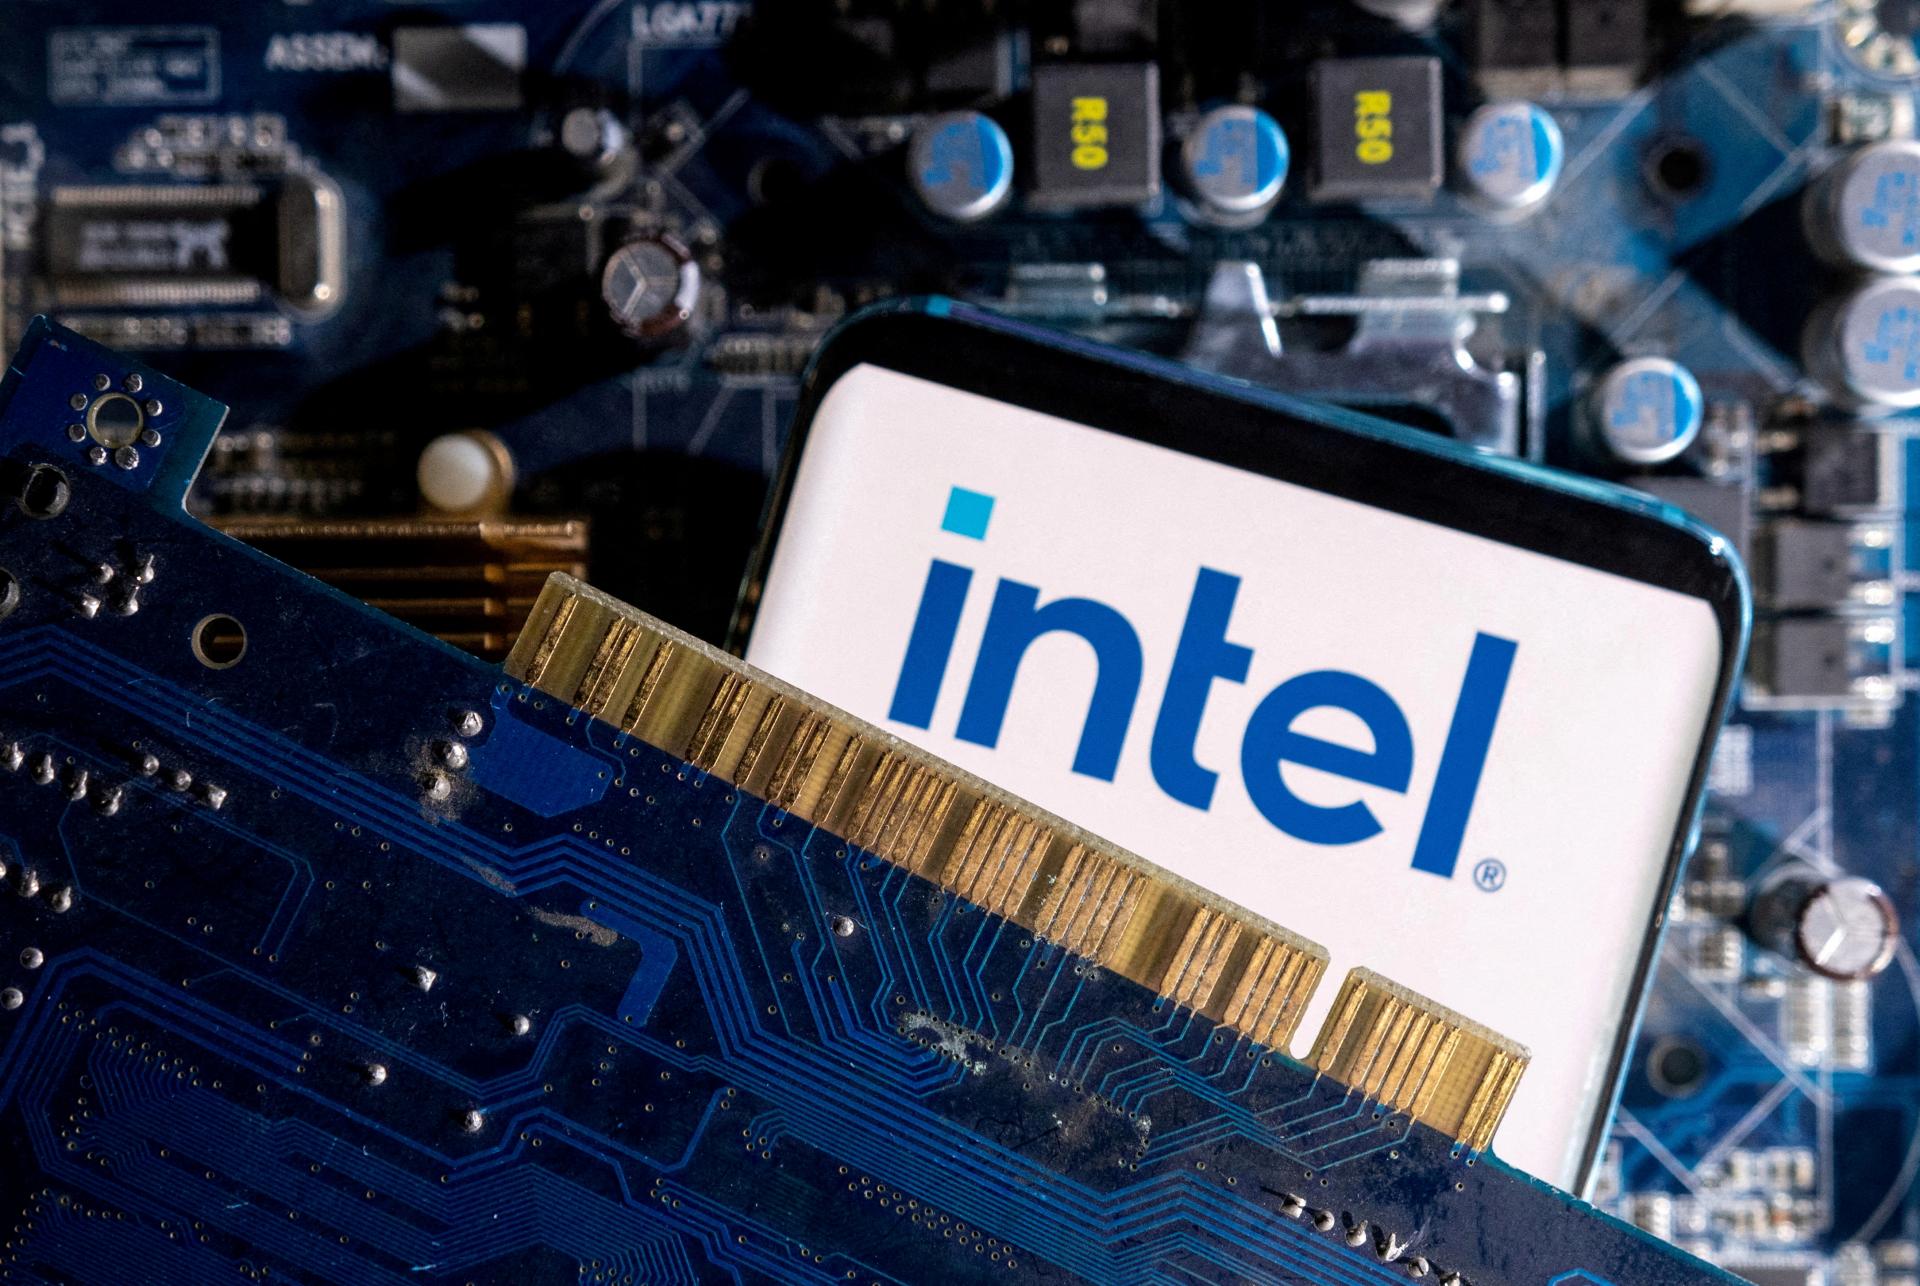 Intel žiada od nemeckej vlády zvýšenie podpory pre svoje investície, prinesie tisícky pracovných miest